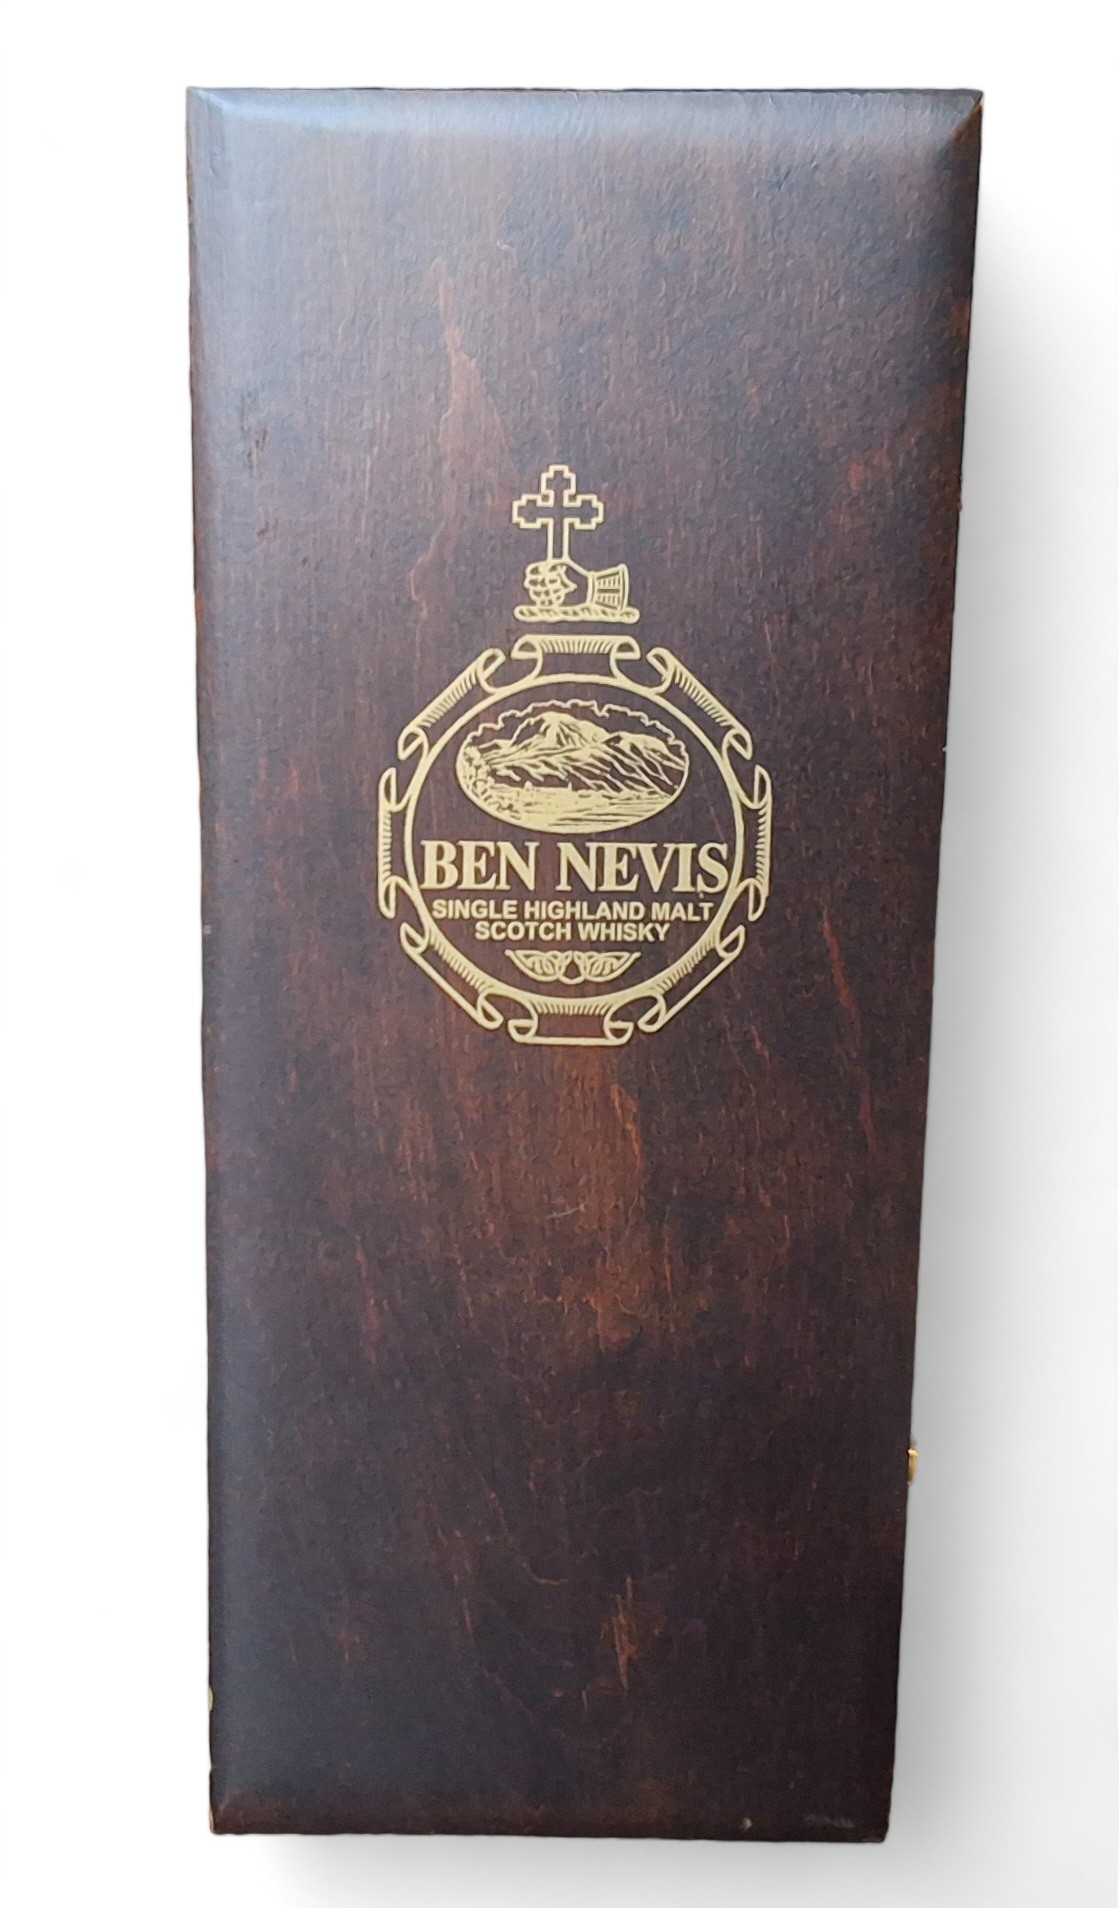 Ben Nevis Single Highland Malt Scotch Whisky, cask no 98/35/12, distilled December 1984, vatted in - Image 2 of 2